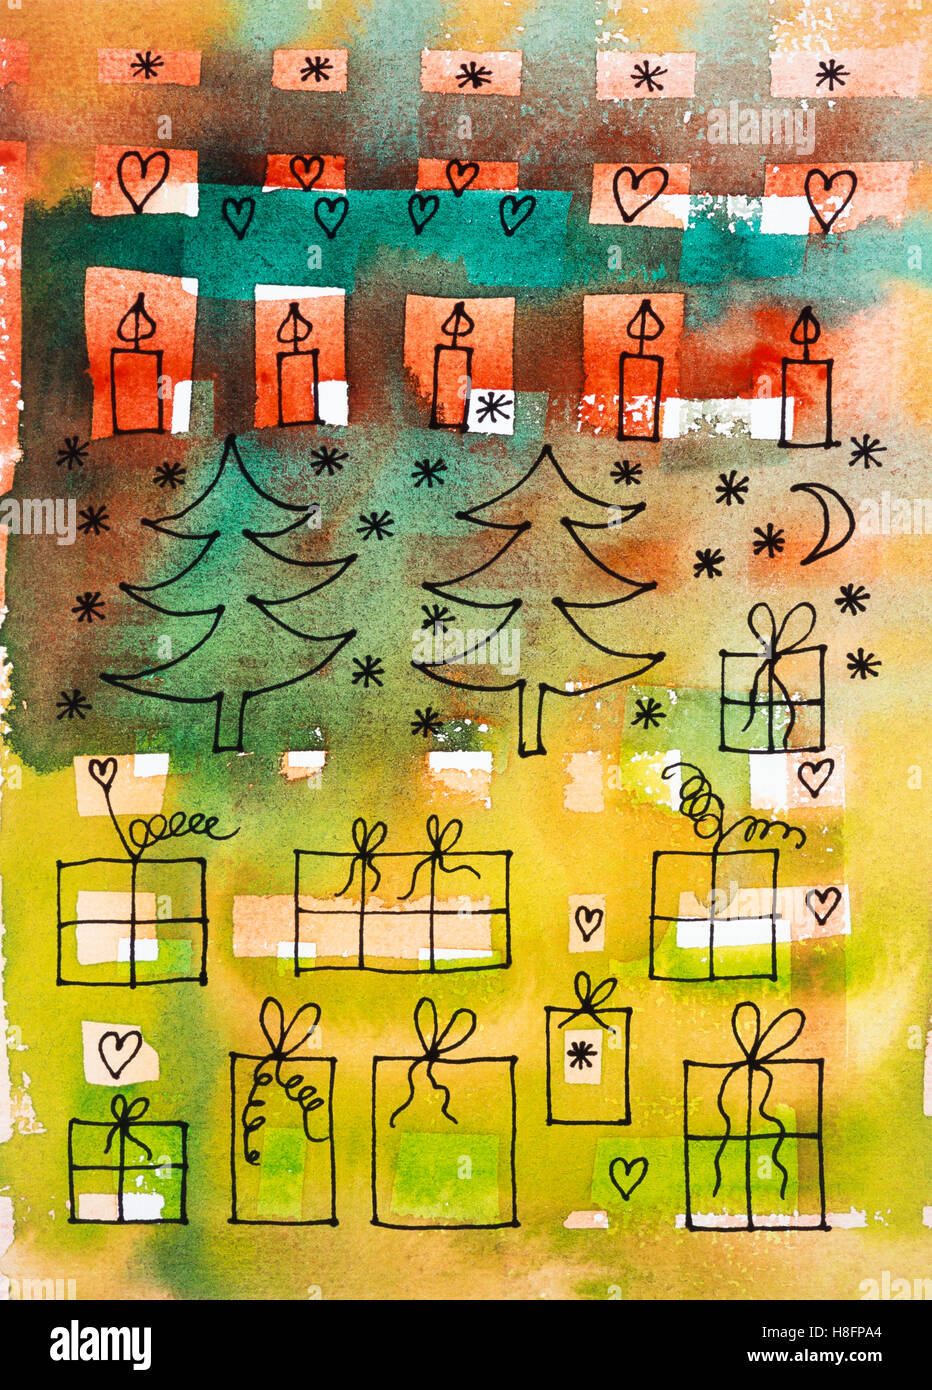 Aquarell von Heidrun Füssenhäuser, Weihnachten im Wald, Symbole für Weihnachten, Kerzen, Bäume, präsentiert. Stockfoto